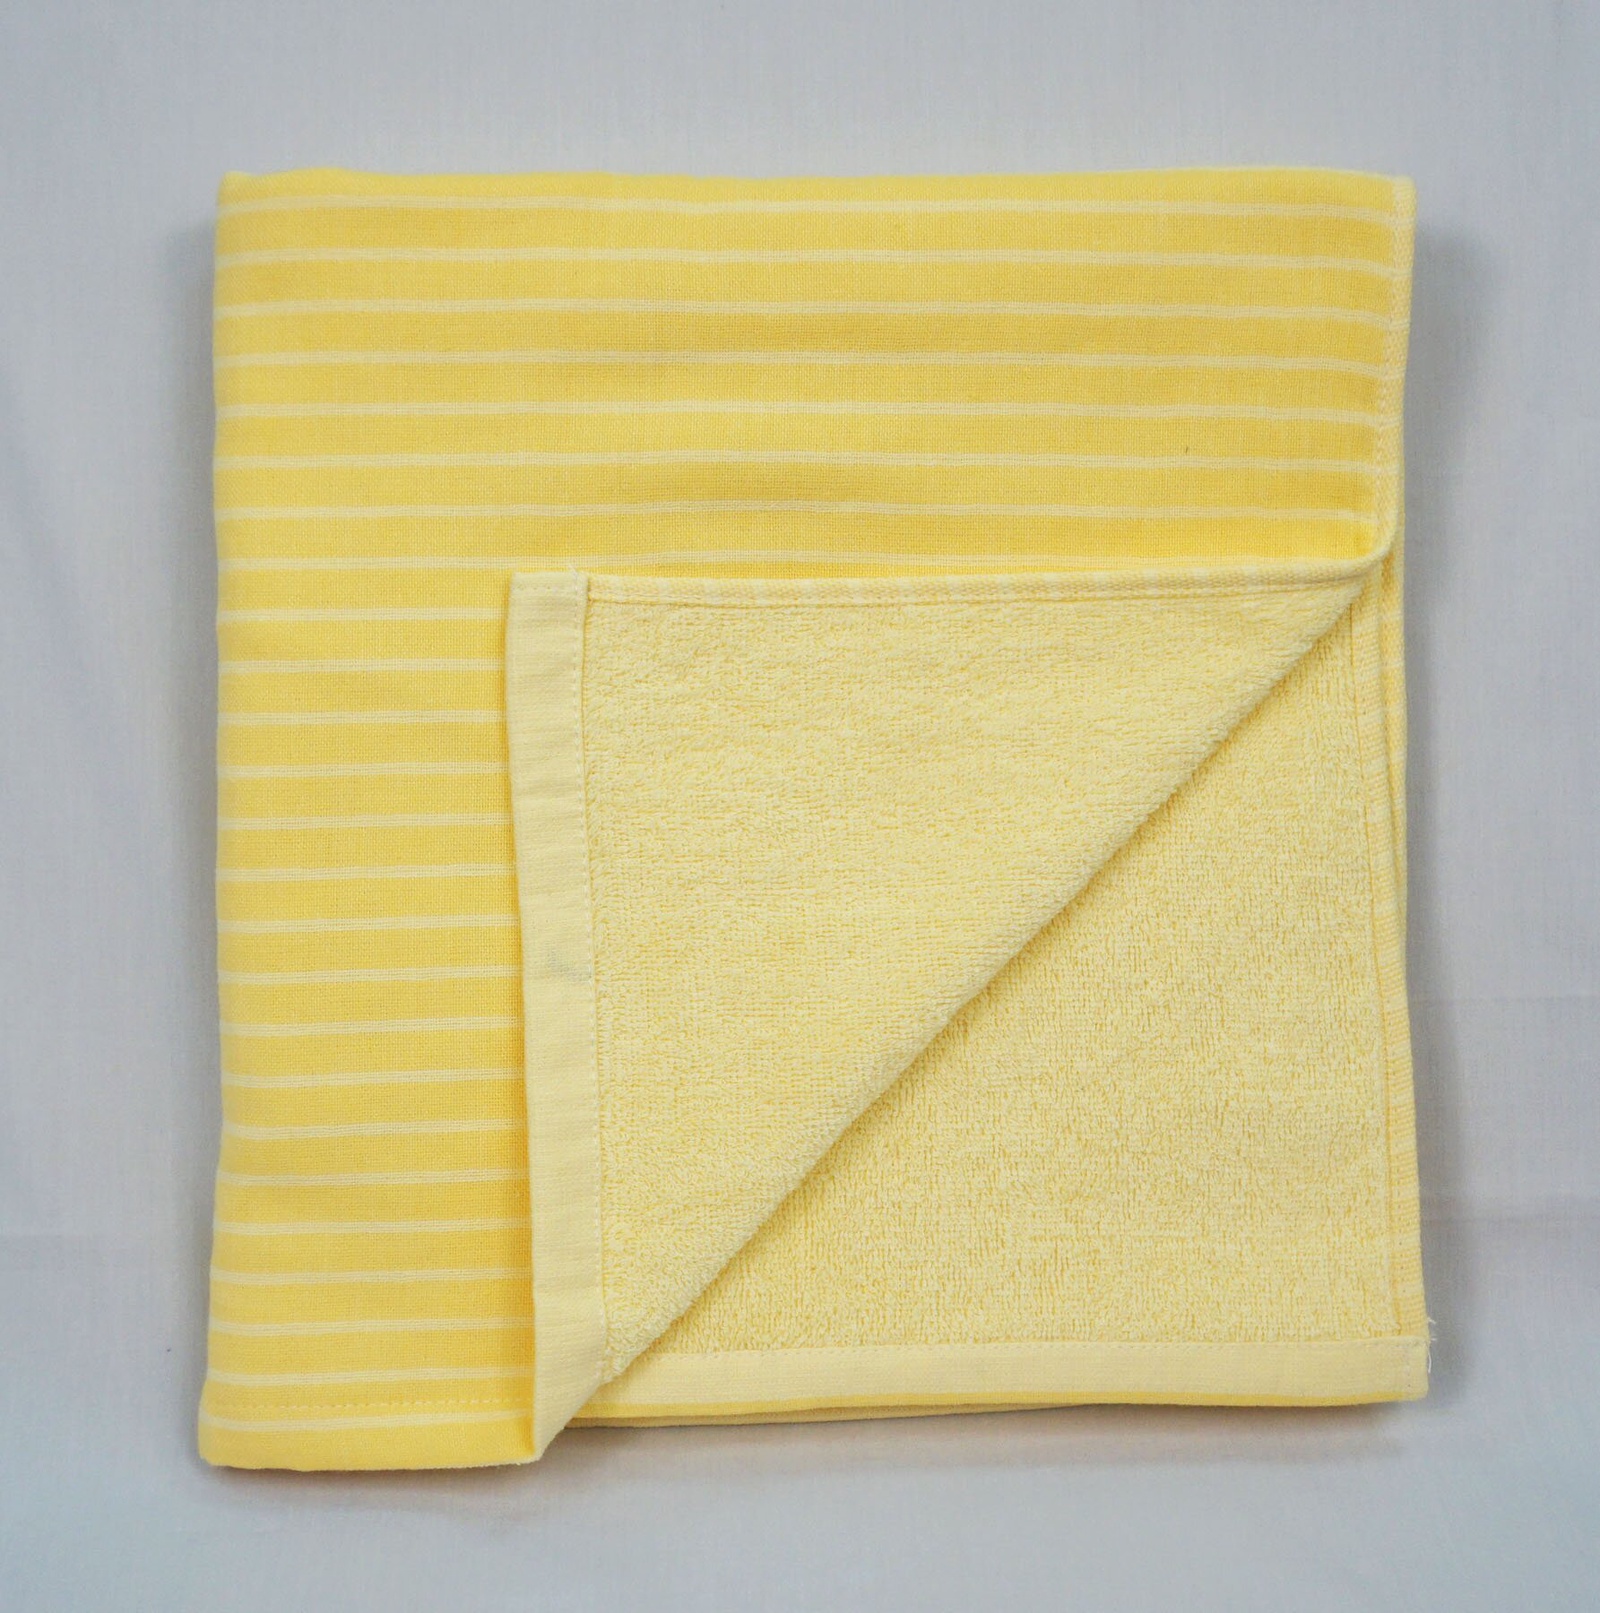 Полотенце банное Grand Stil Пастила, размер 65*135, N17-198b, желтый